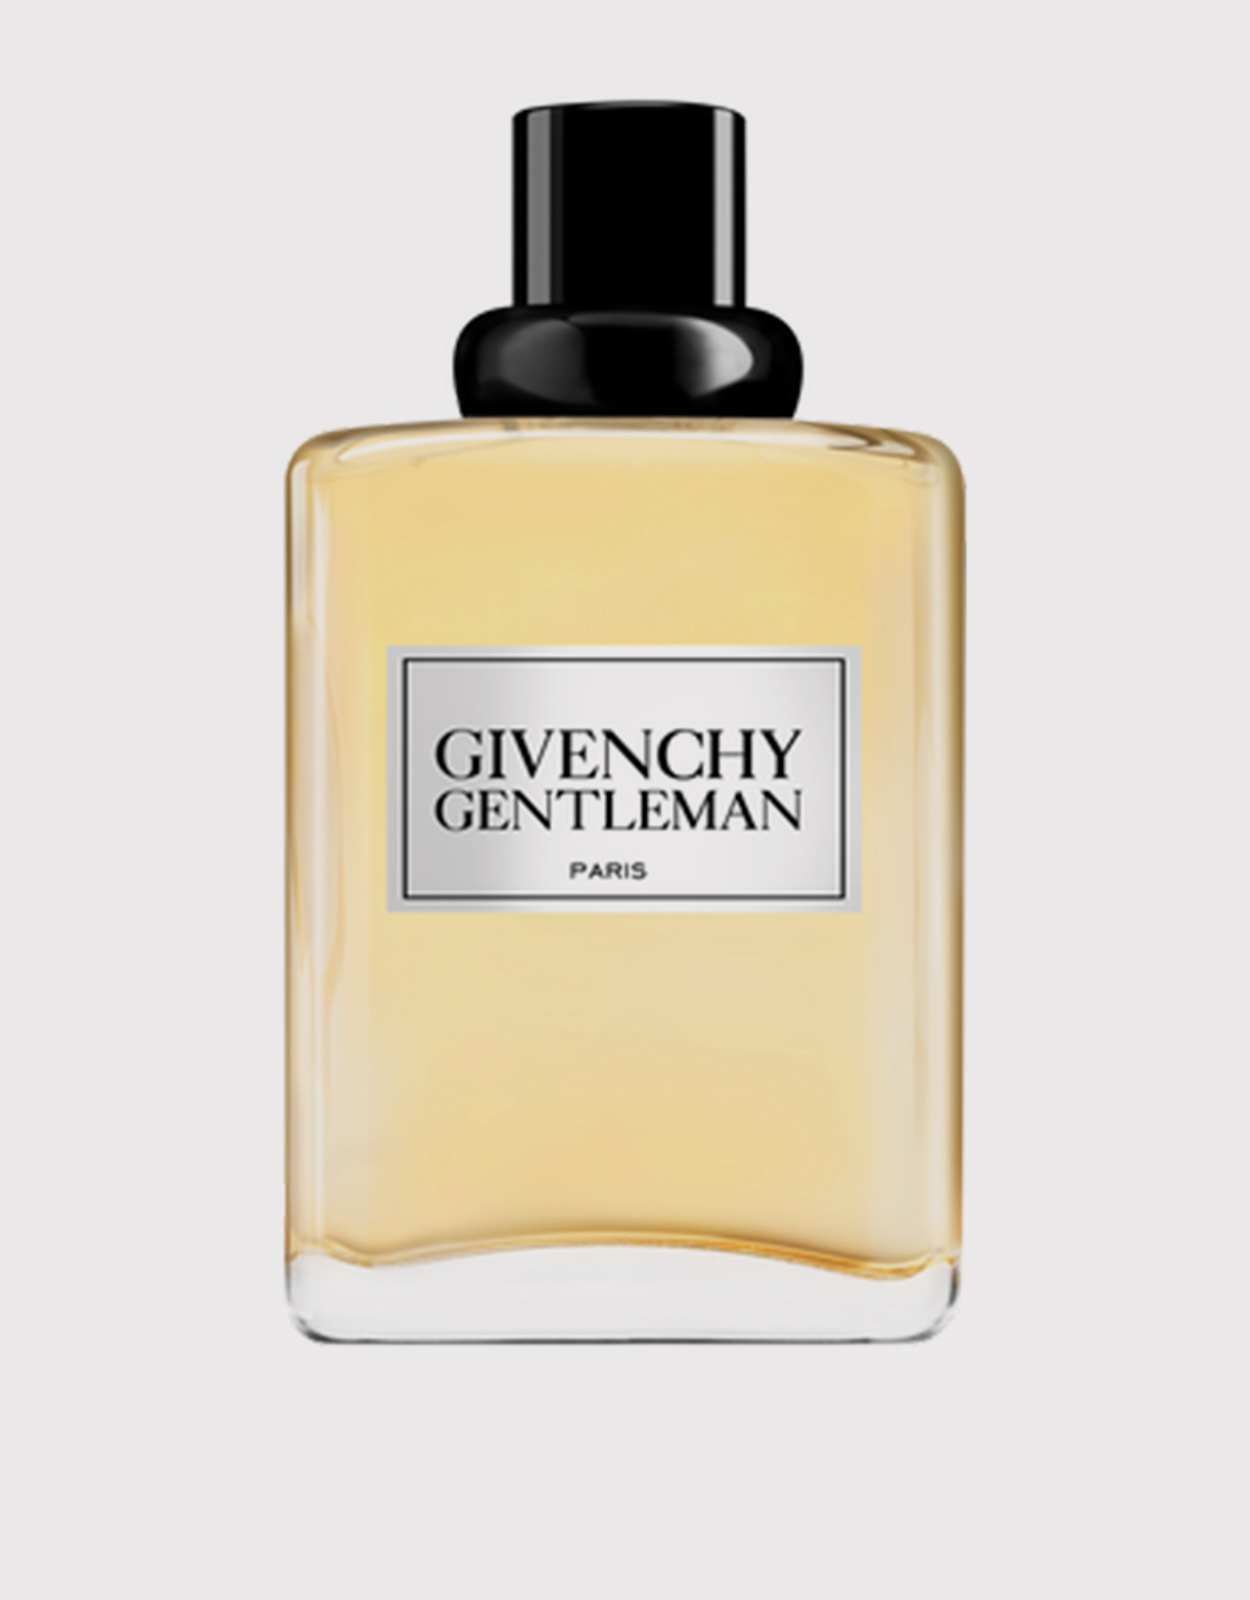 Givenchy Beauty | Gentleman Original For Men Eau De Toilette 100ml |  Fragrance | IFCHIC.COM